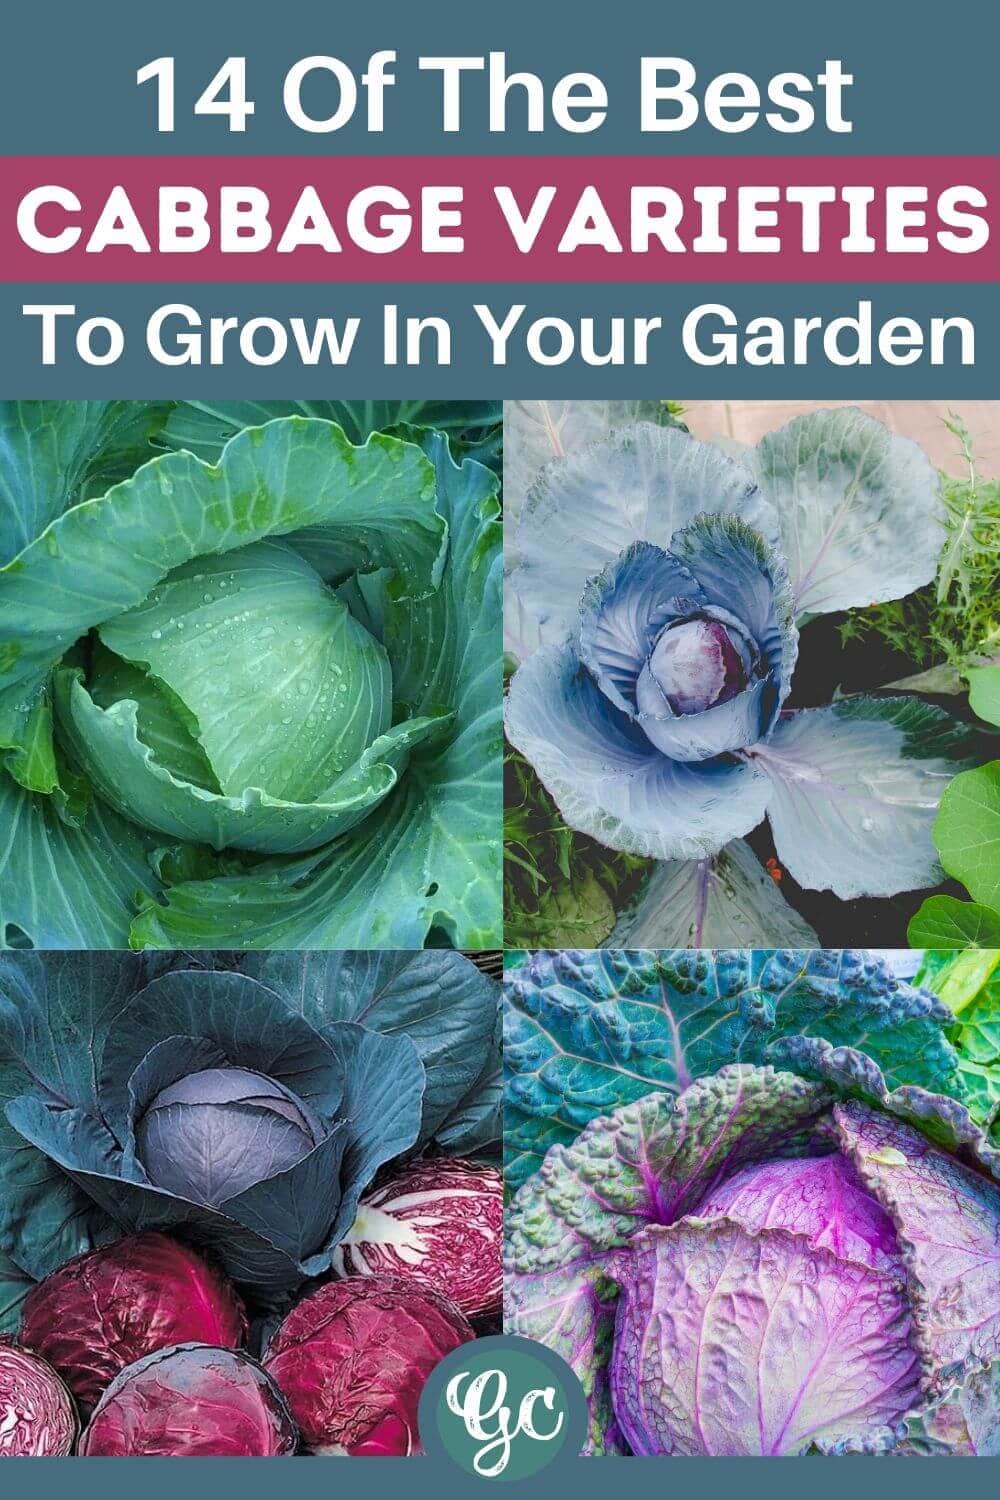  14 различных видов вкусных сортов капусты, которые можно выращивать в своем саду